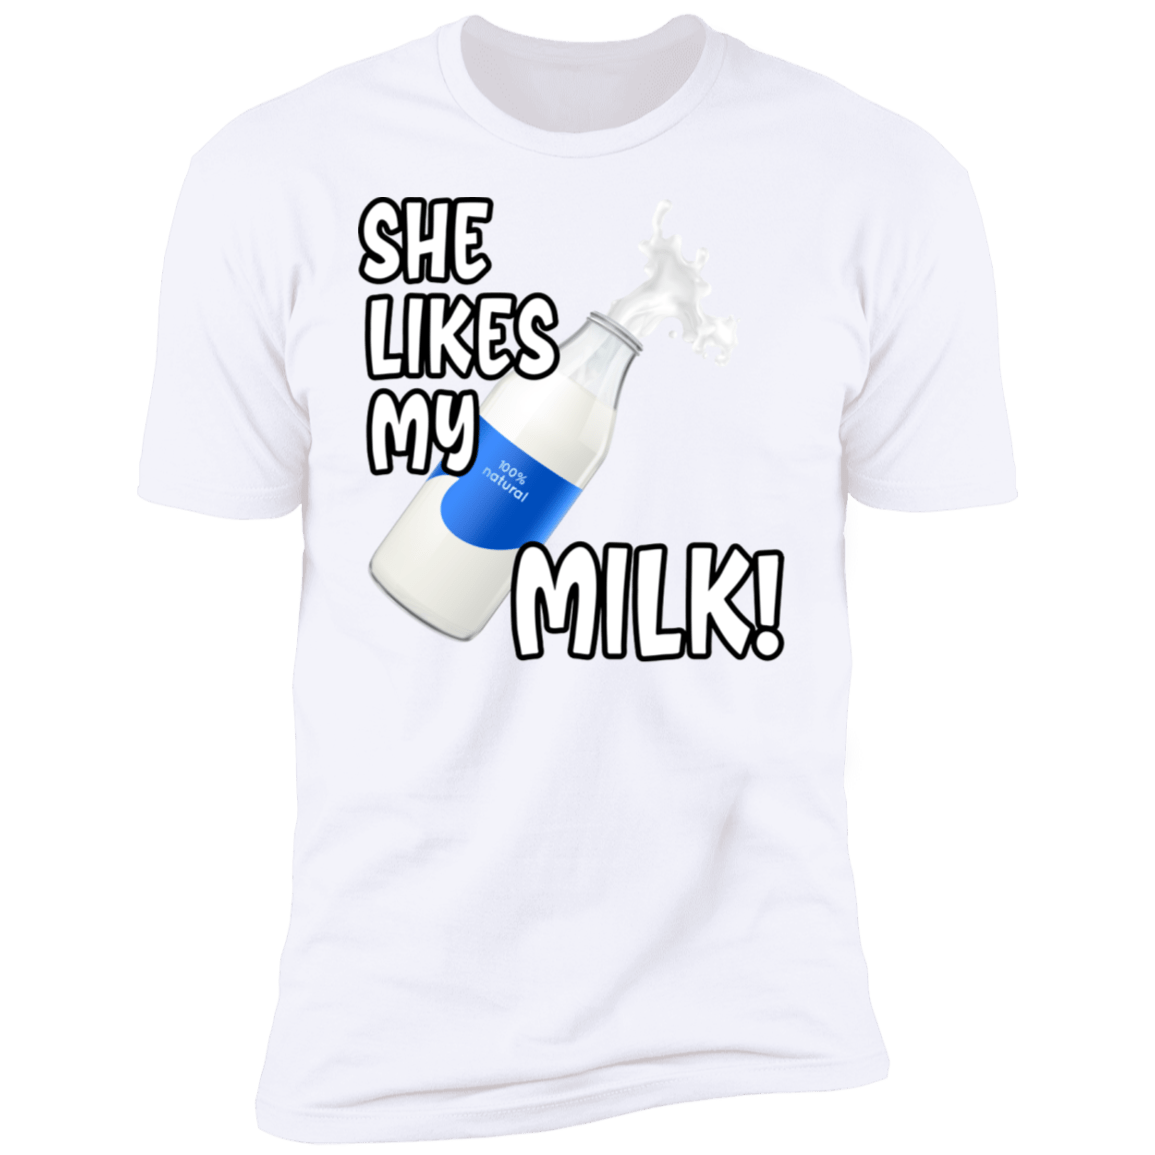 She Likes My Milk!